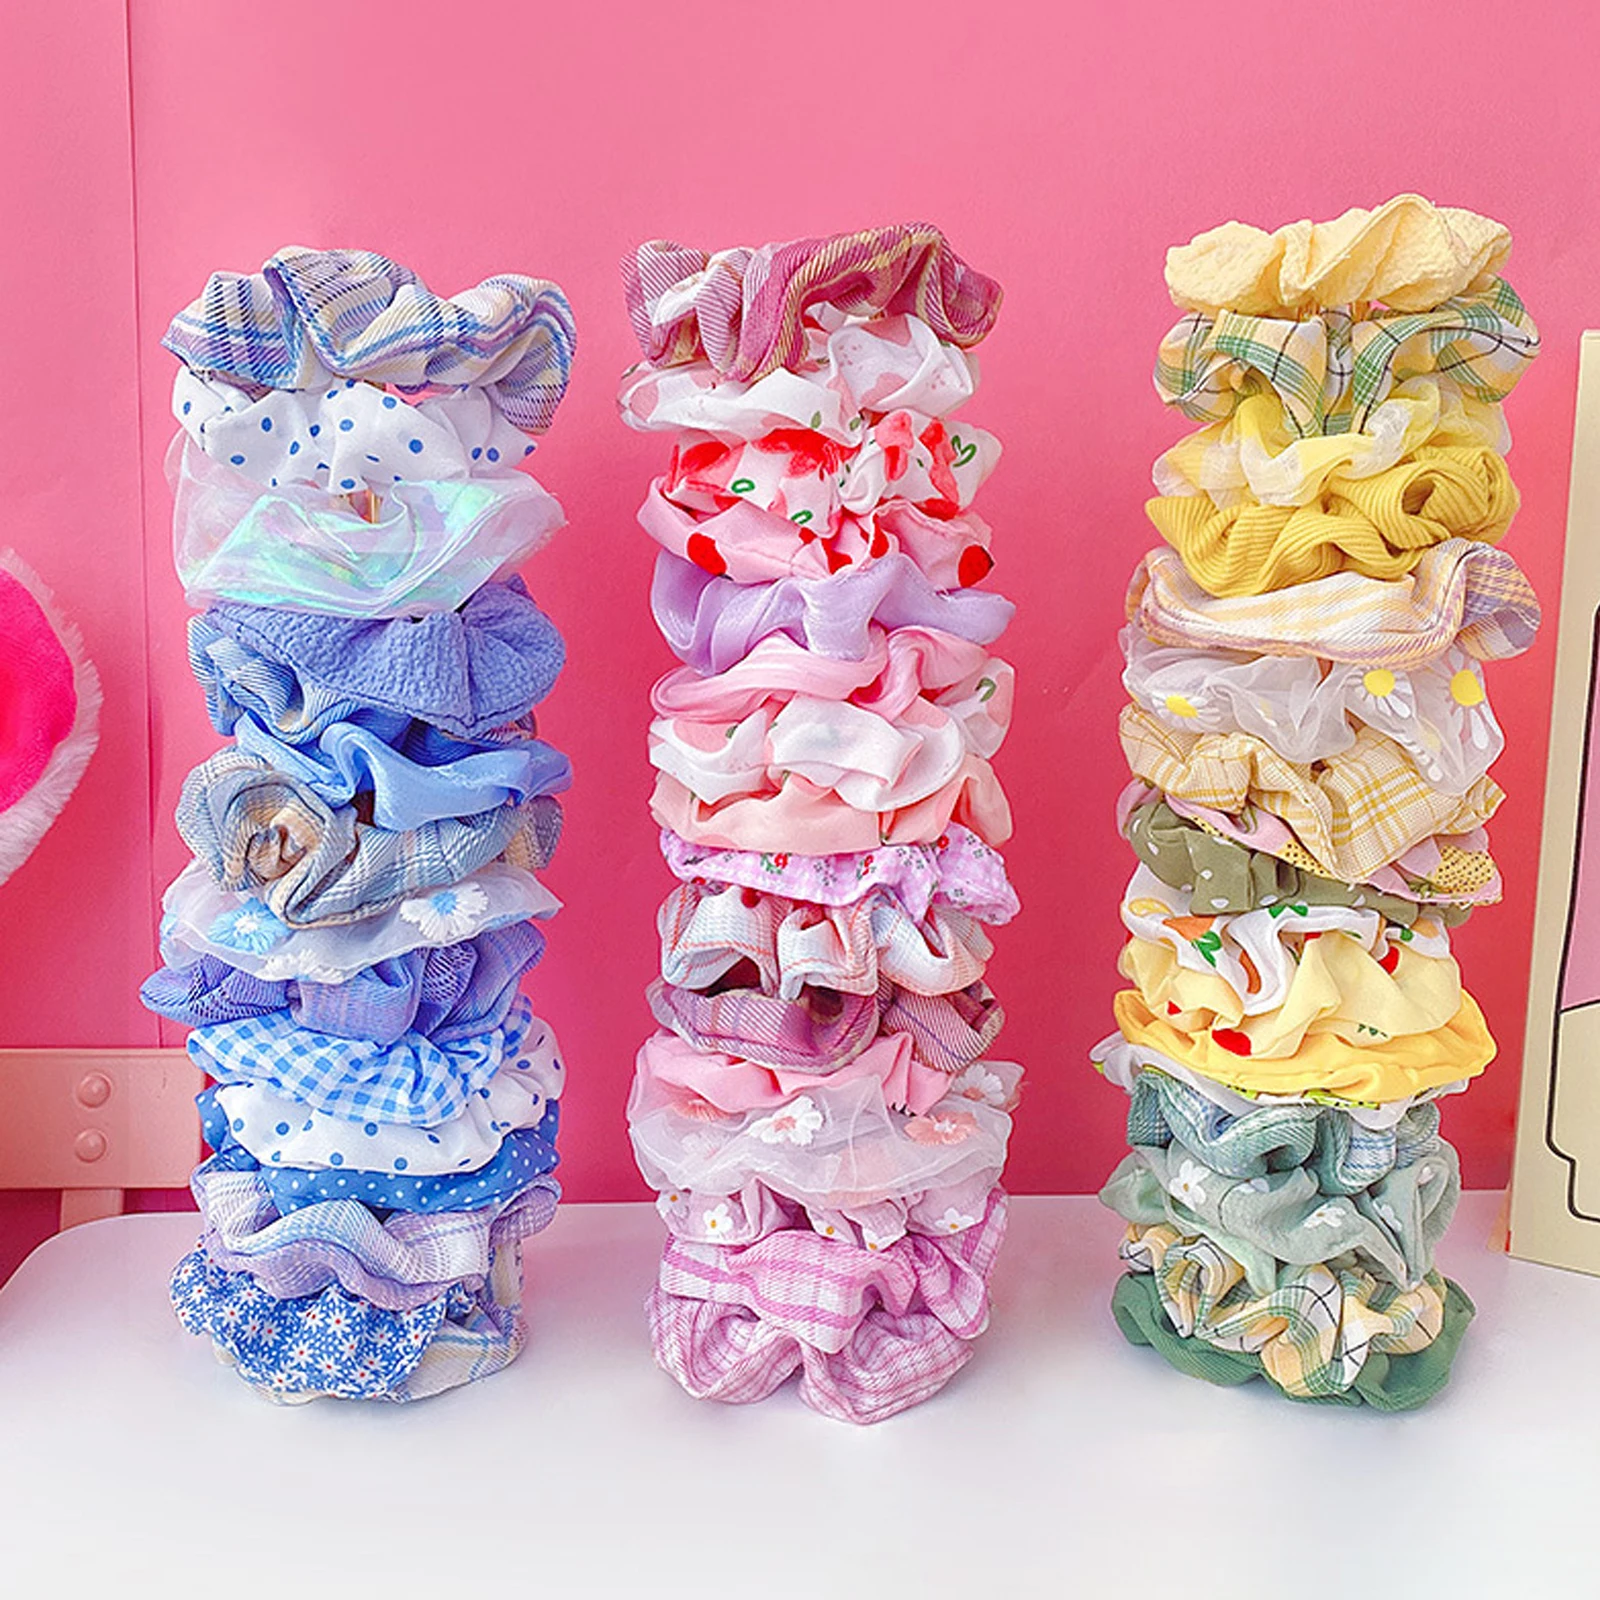 20 unidslote estilo coreano pelo accesorios dulces goteando pelo Clip broche de princesa de Peine tocado pelo para niñas 